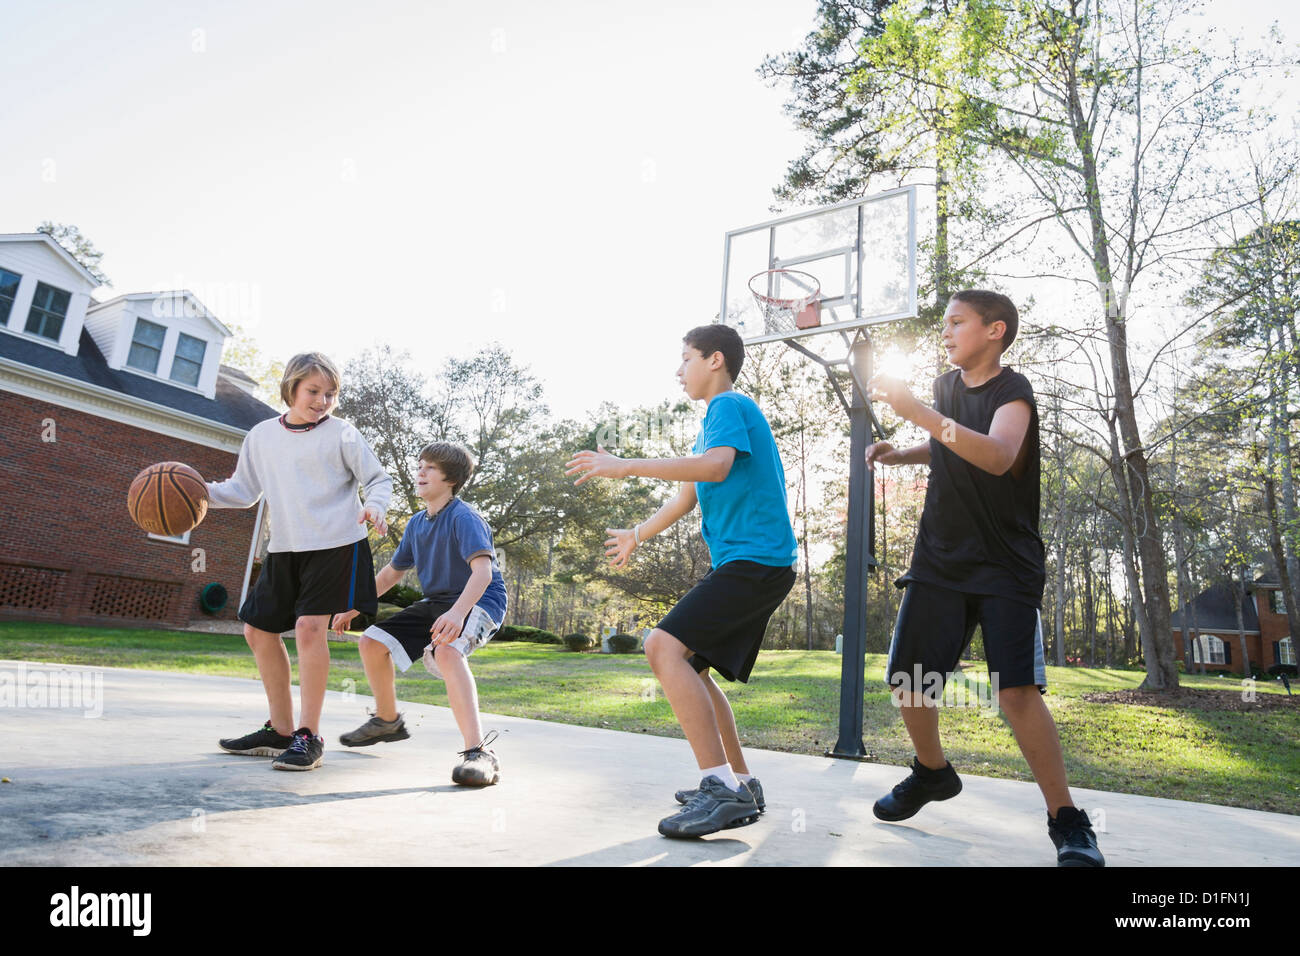 Boys playing basketball Stock Photo